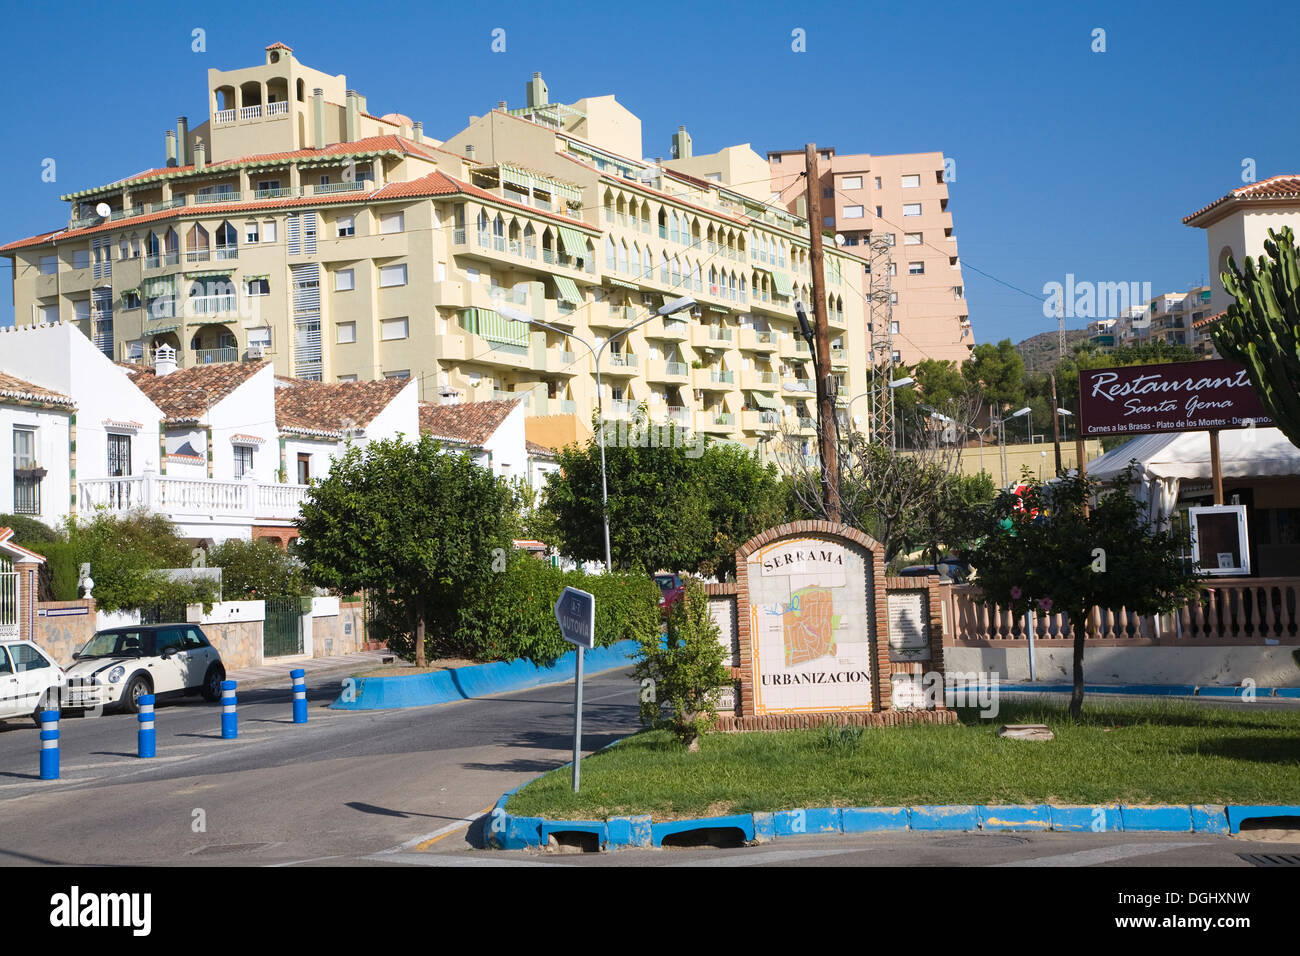 Serrama Urbanizacion  housing project La Cala del Moral, Malaga province, Spain Stock Photo